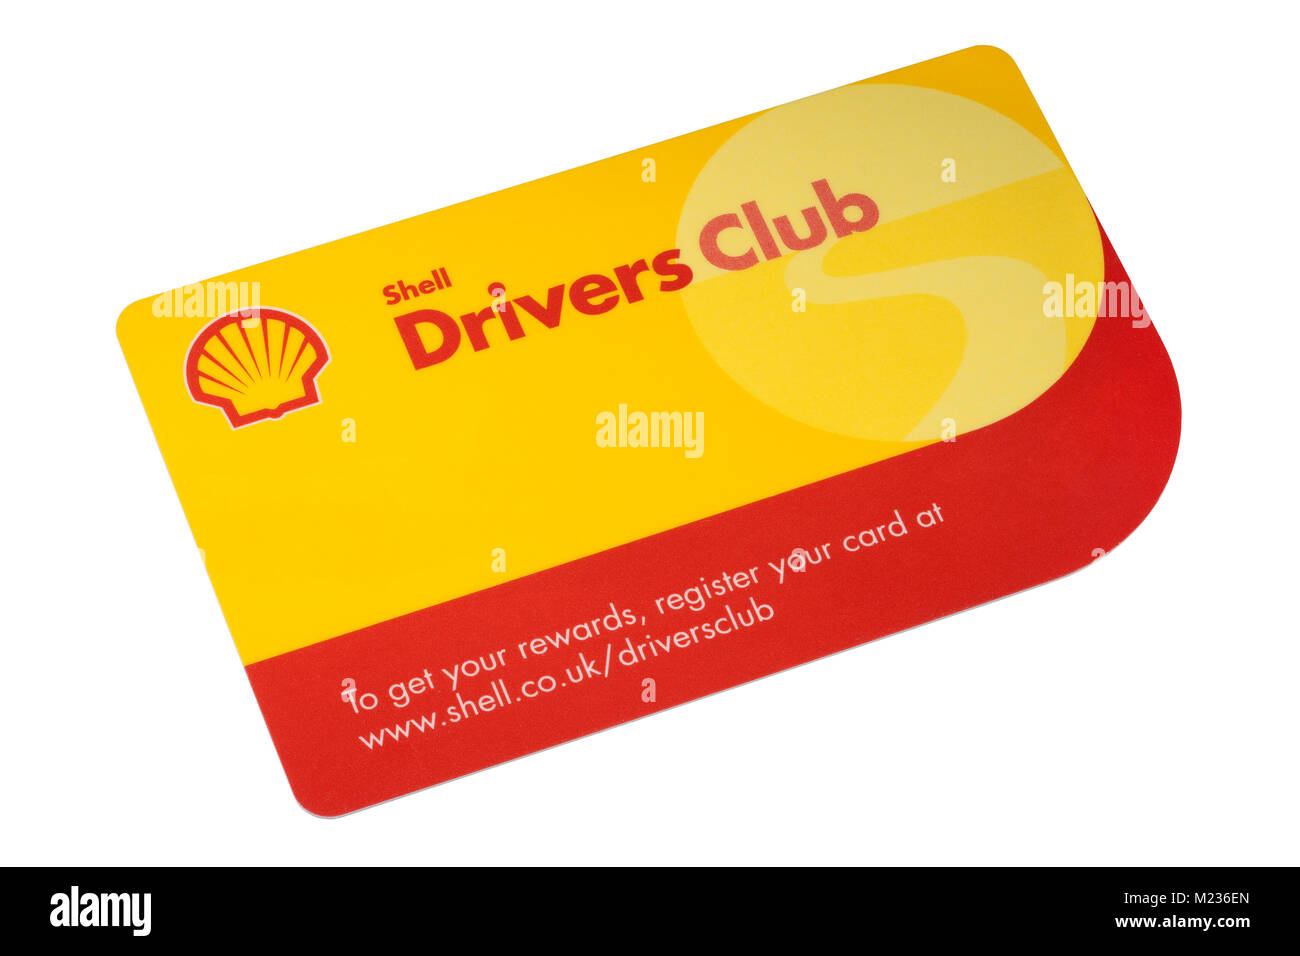 Guscio Drivers Club Loyalty Rewards card isolato su uno sfondo bianco Foto Stock